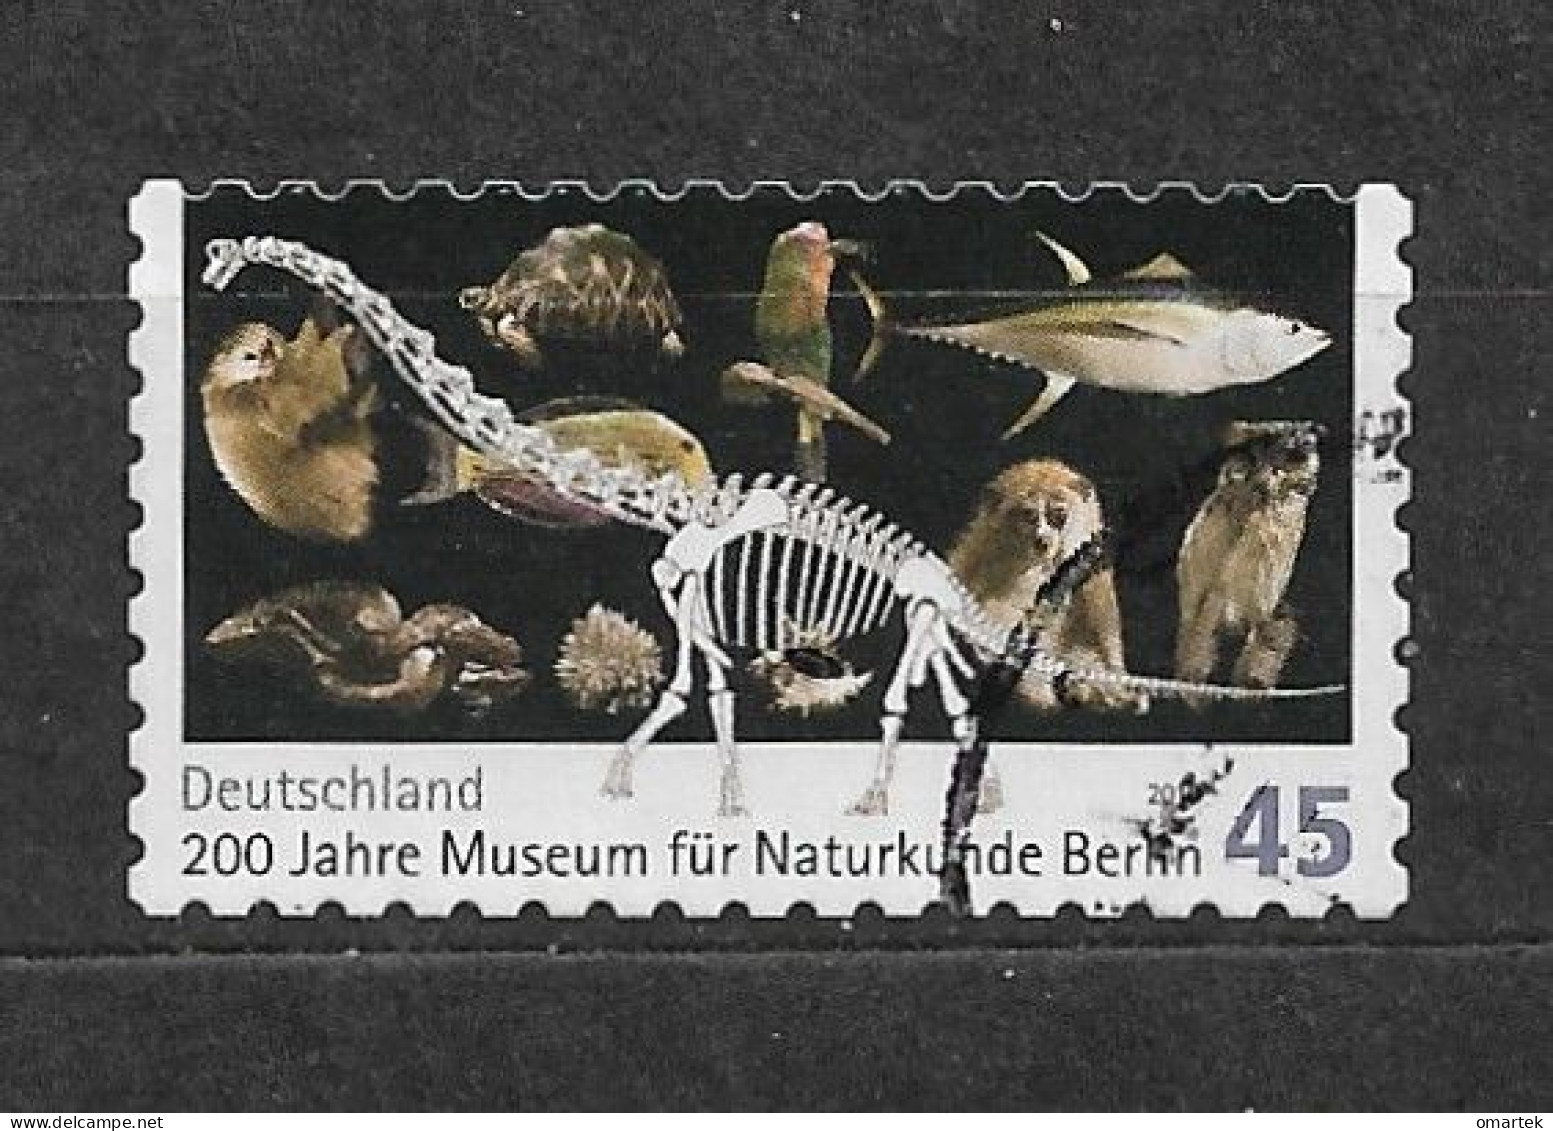 Deutschland Germany BRD 2010 ⊙ Mi 2780 Natural History Museum, Berlin. C1 - Gebruikt